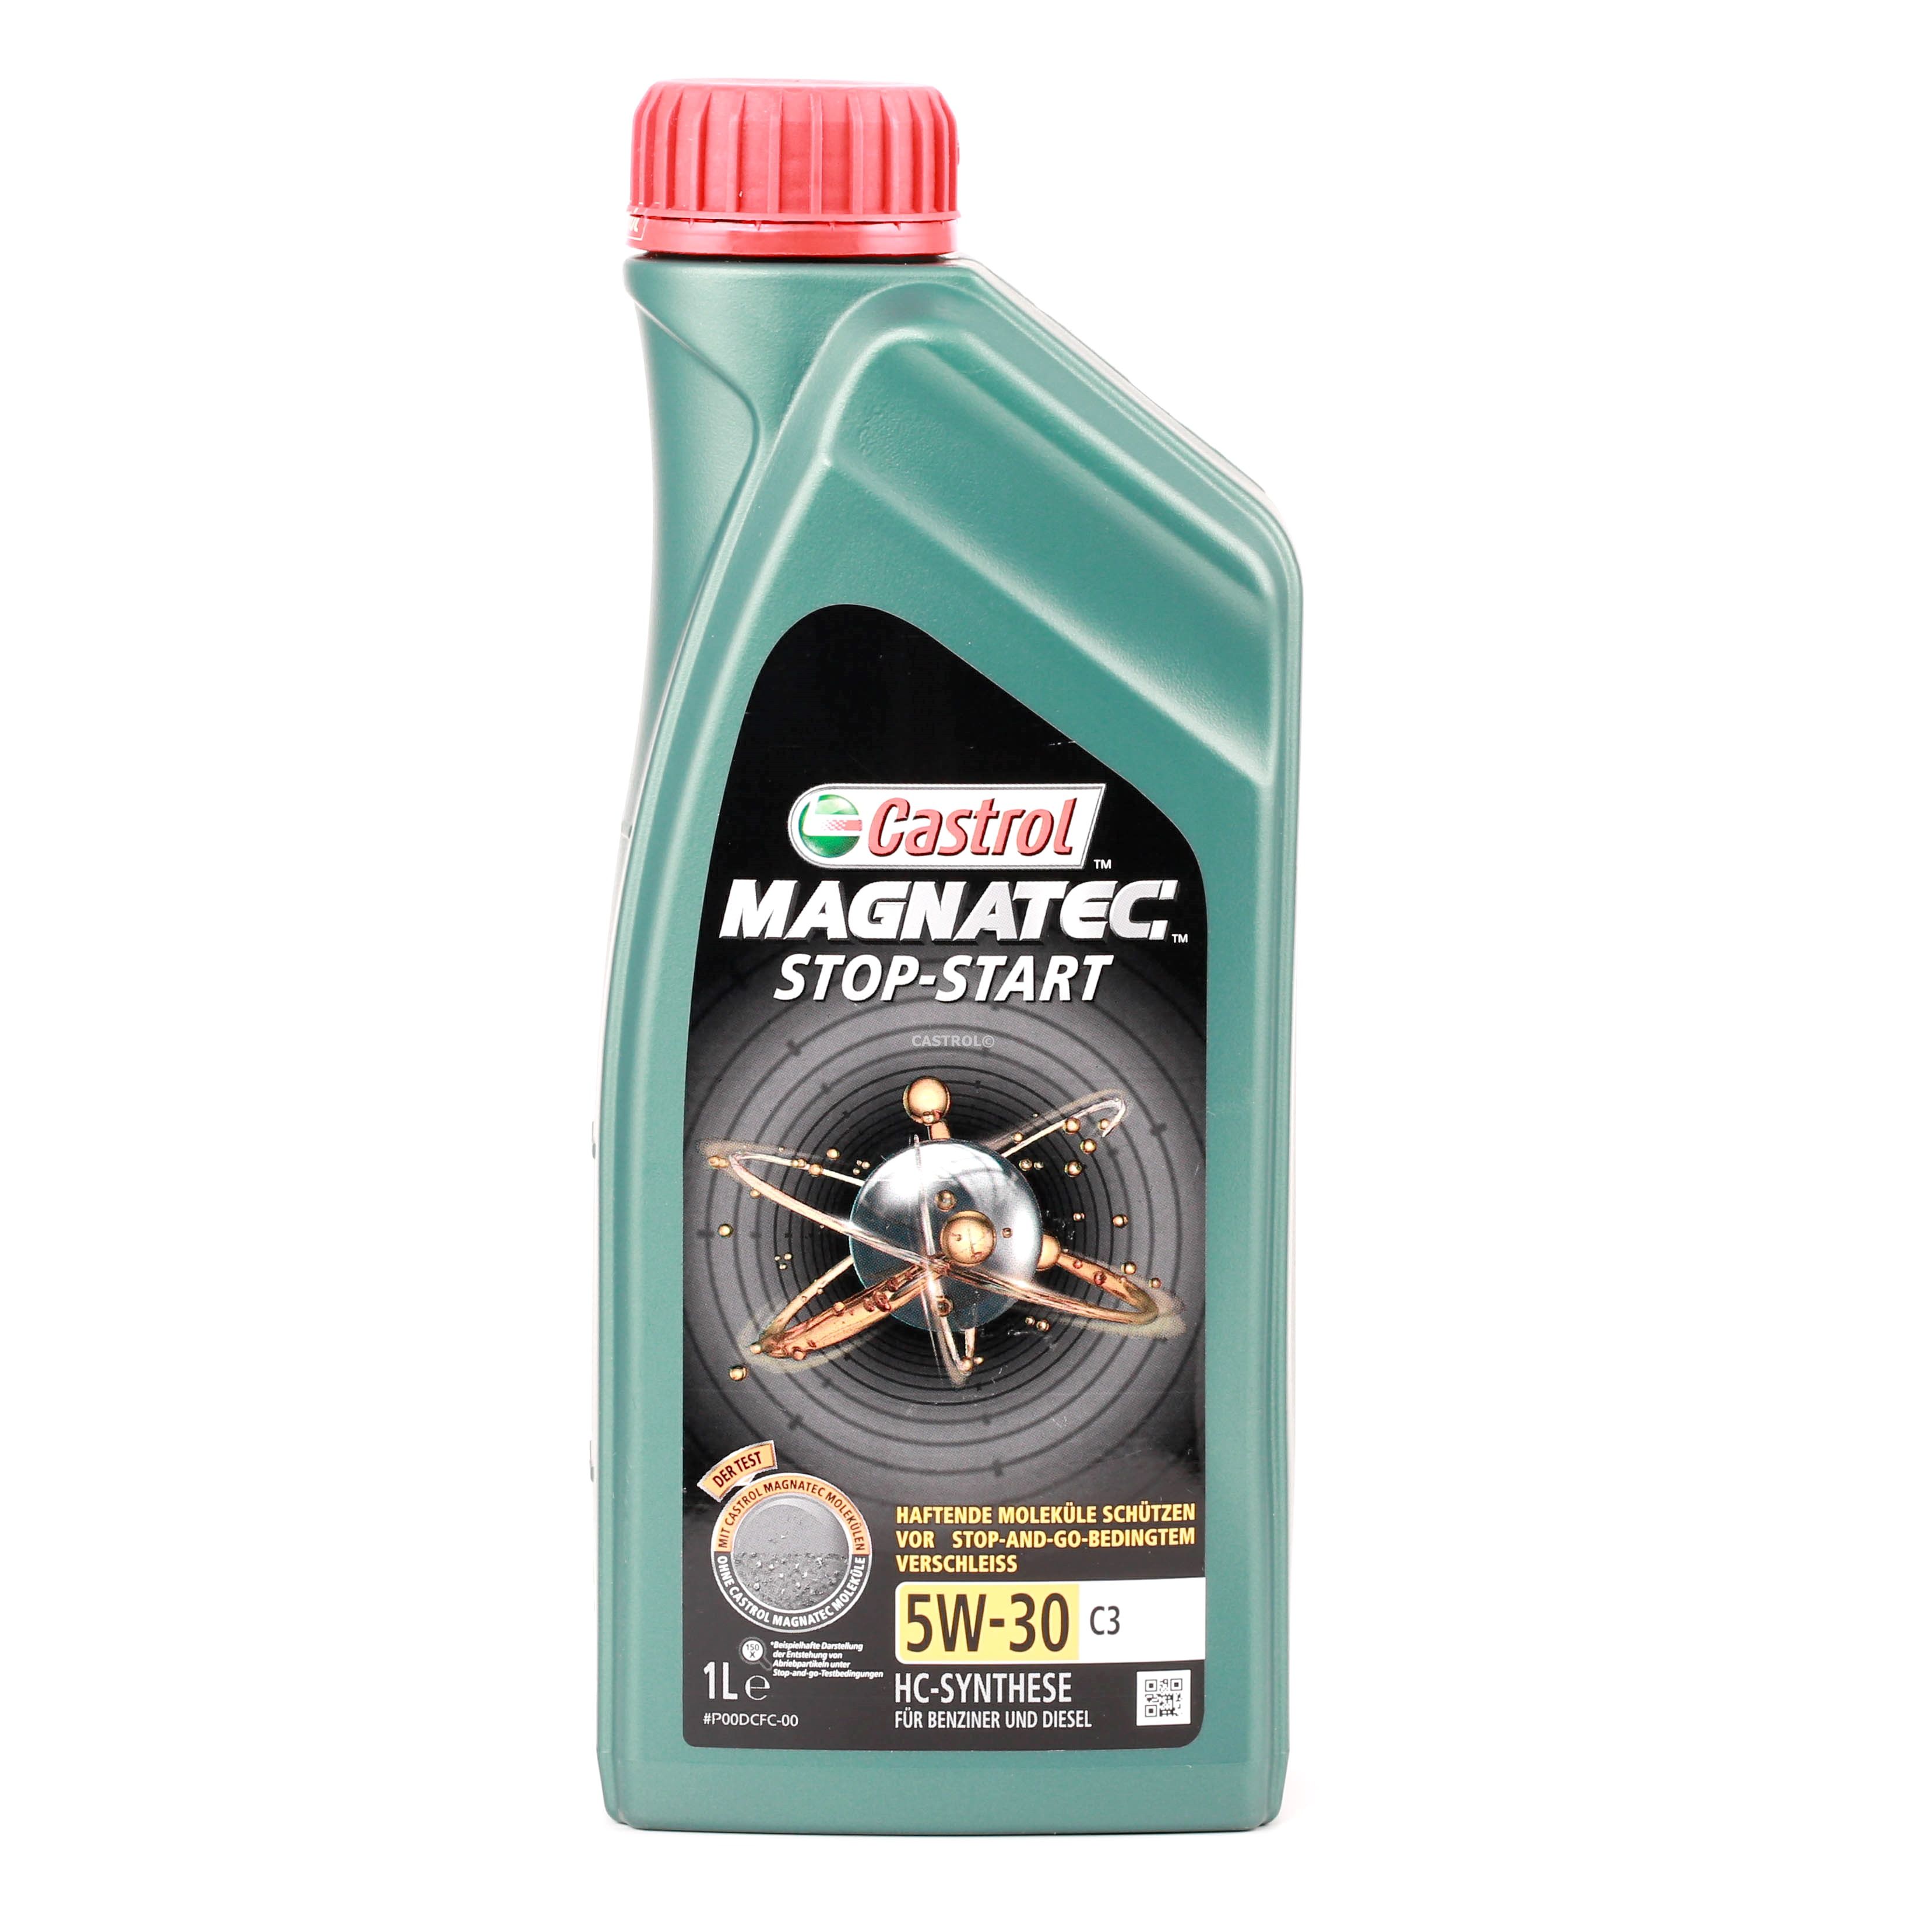 Aceite Castrol Magnatec Stop-Start 5W30 C3 1L - Precio: 13,93 € - Megataller